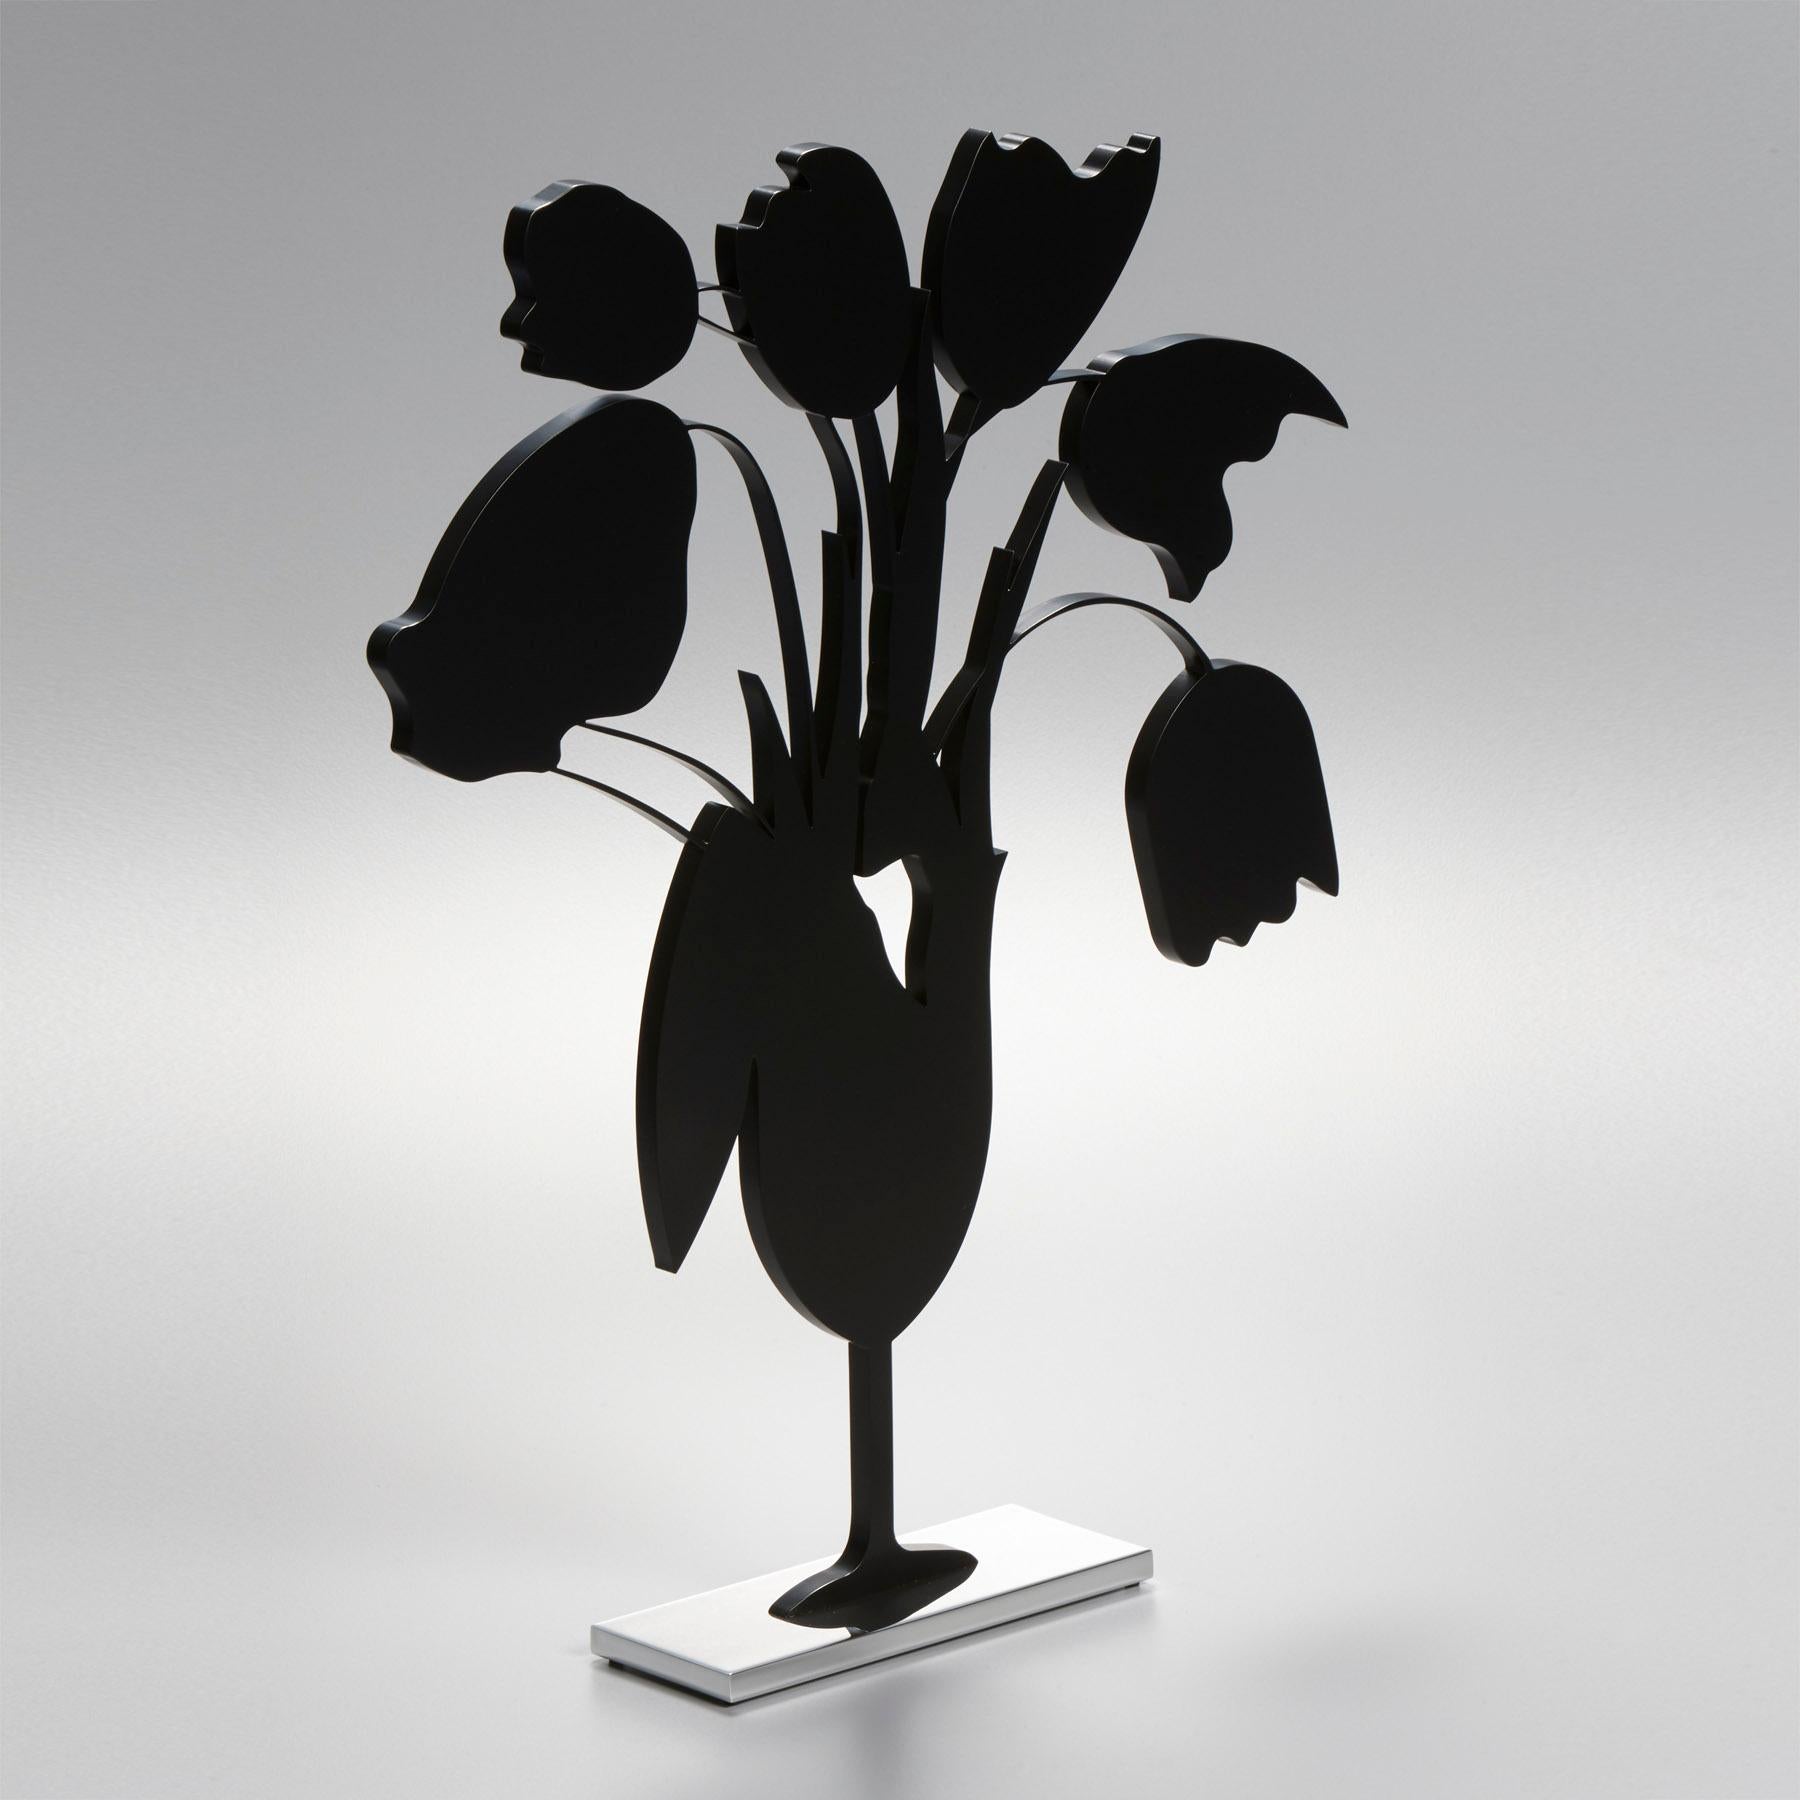 Appartenant à la célèbre série Flower, cette sculpture est une réinterprétation abstraite de la tradition des natures mortes.

Donald Sultan, Tulipes noires et vase, 5 avril
Tulipes noires et vase, 5 avril - Contemporain, 21e siècle, Sculpture, Noir